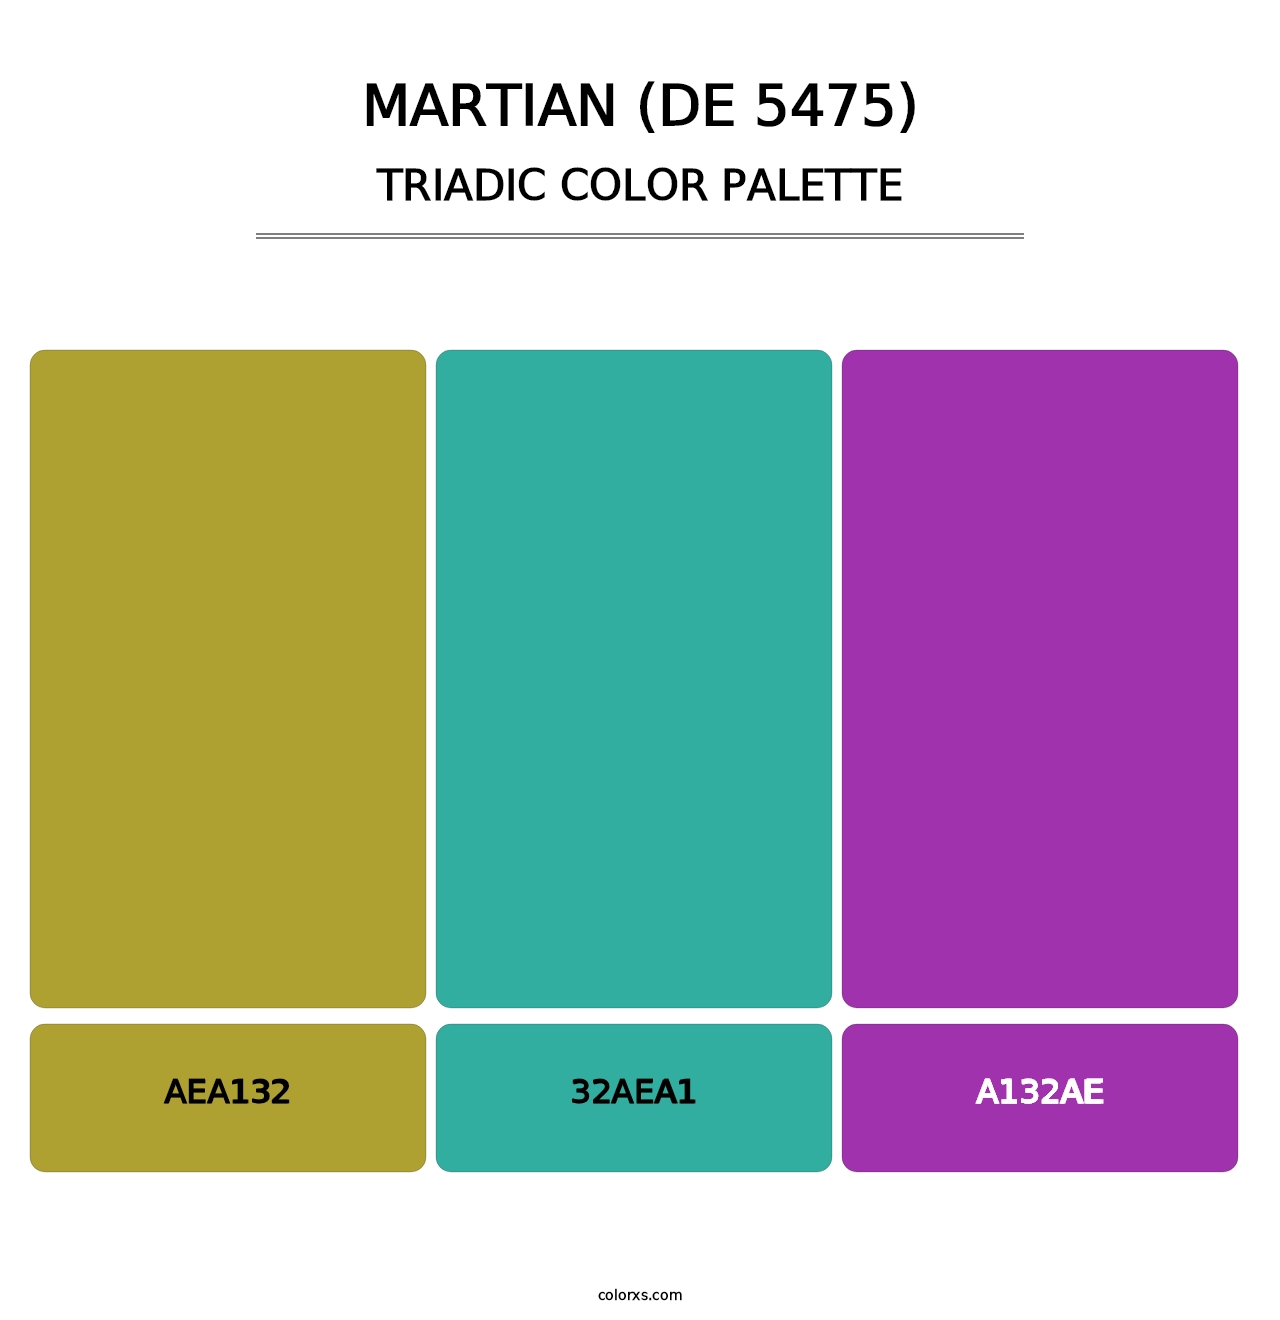 Martian (DE 5475) - Triadic Color Palette